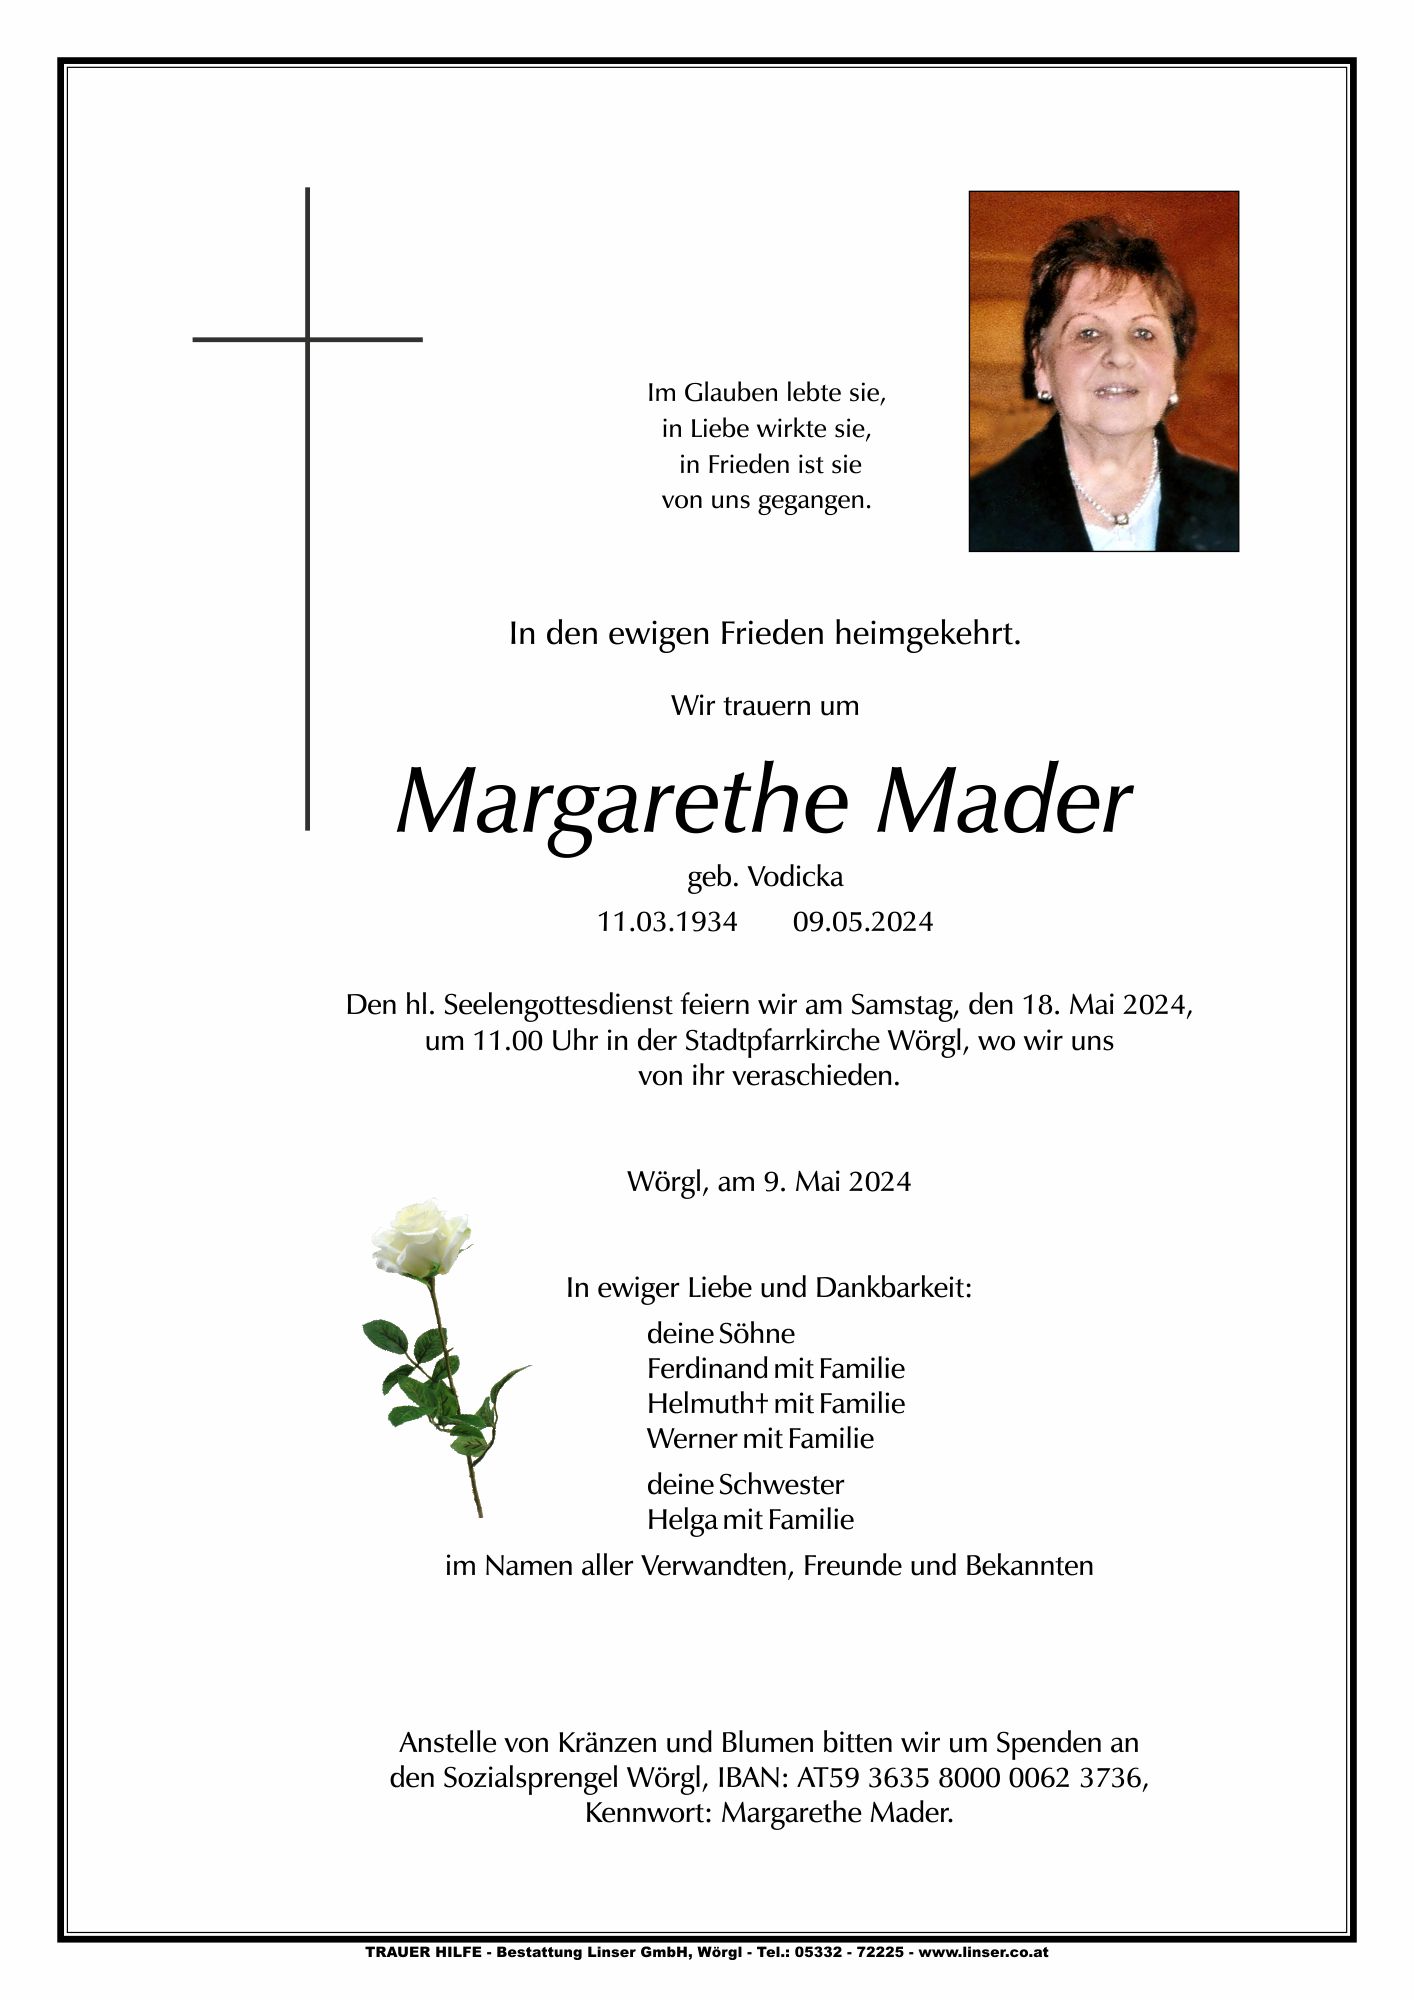 Margarethe Mader